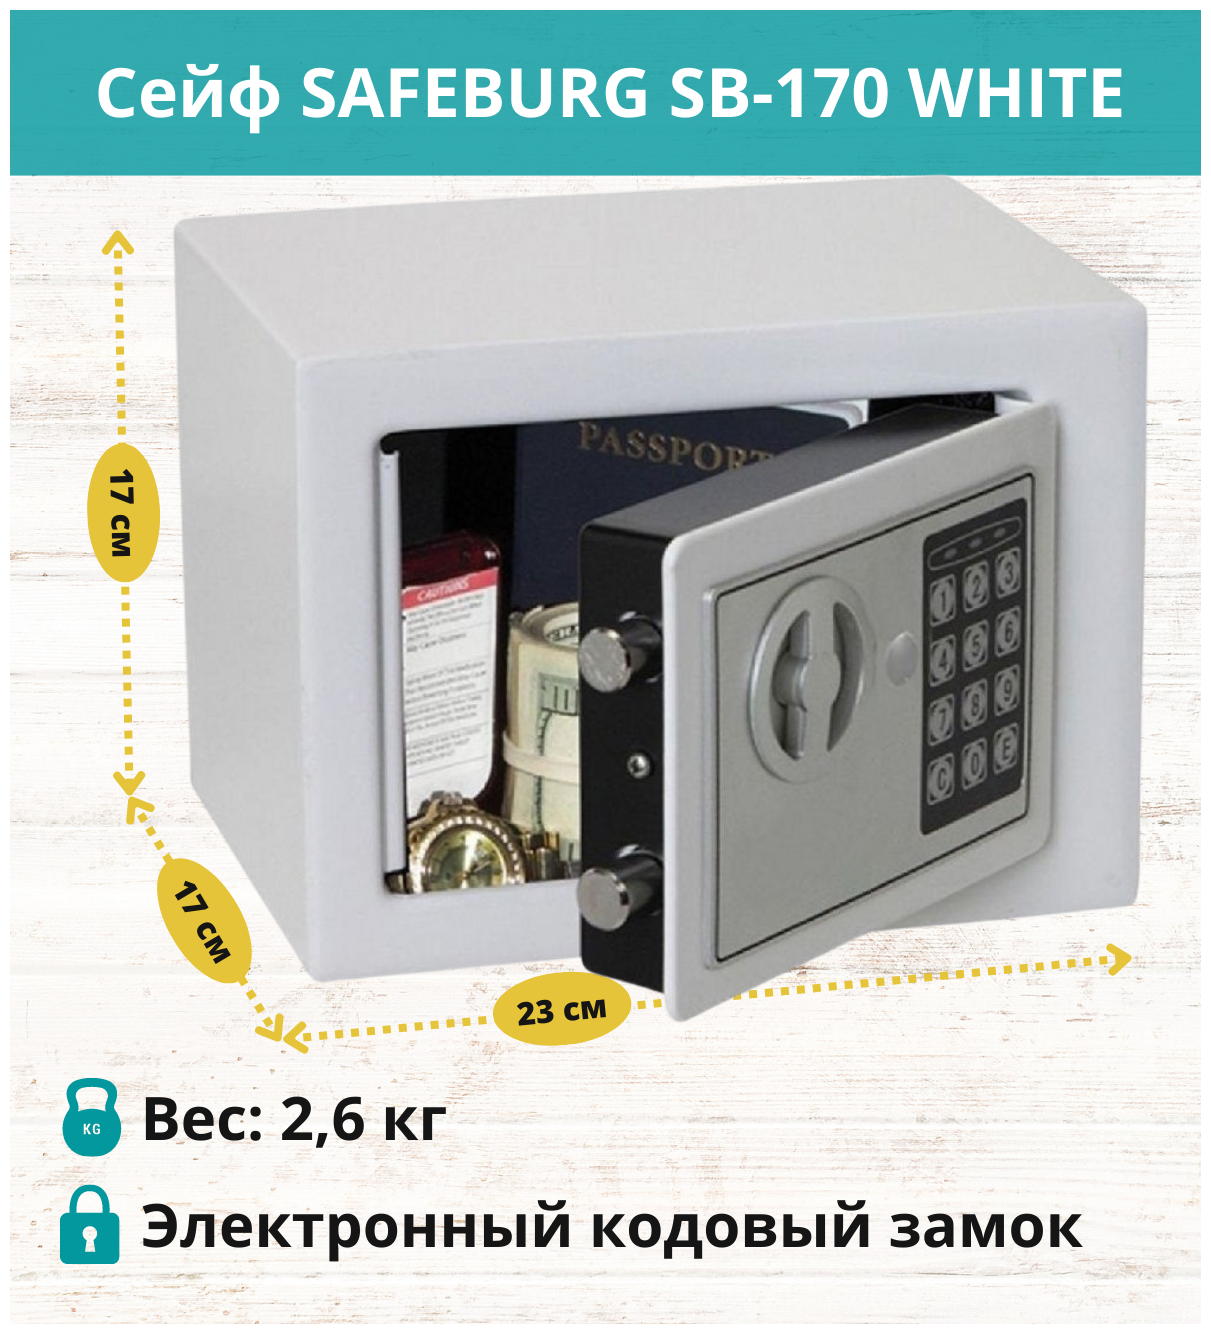 Сейф с электронным кодовым замком SAFEBURG SB-170 для денег и документов для дома/квартиры/офиса/в шкаф